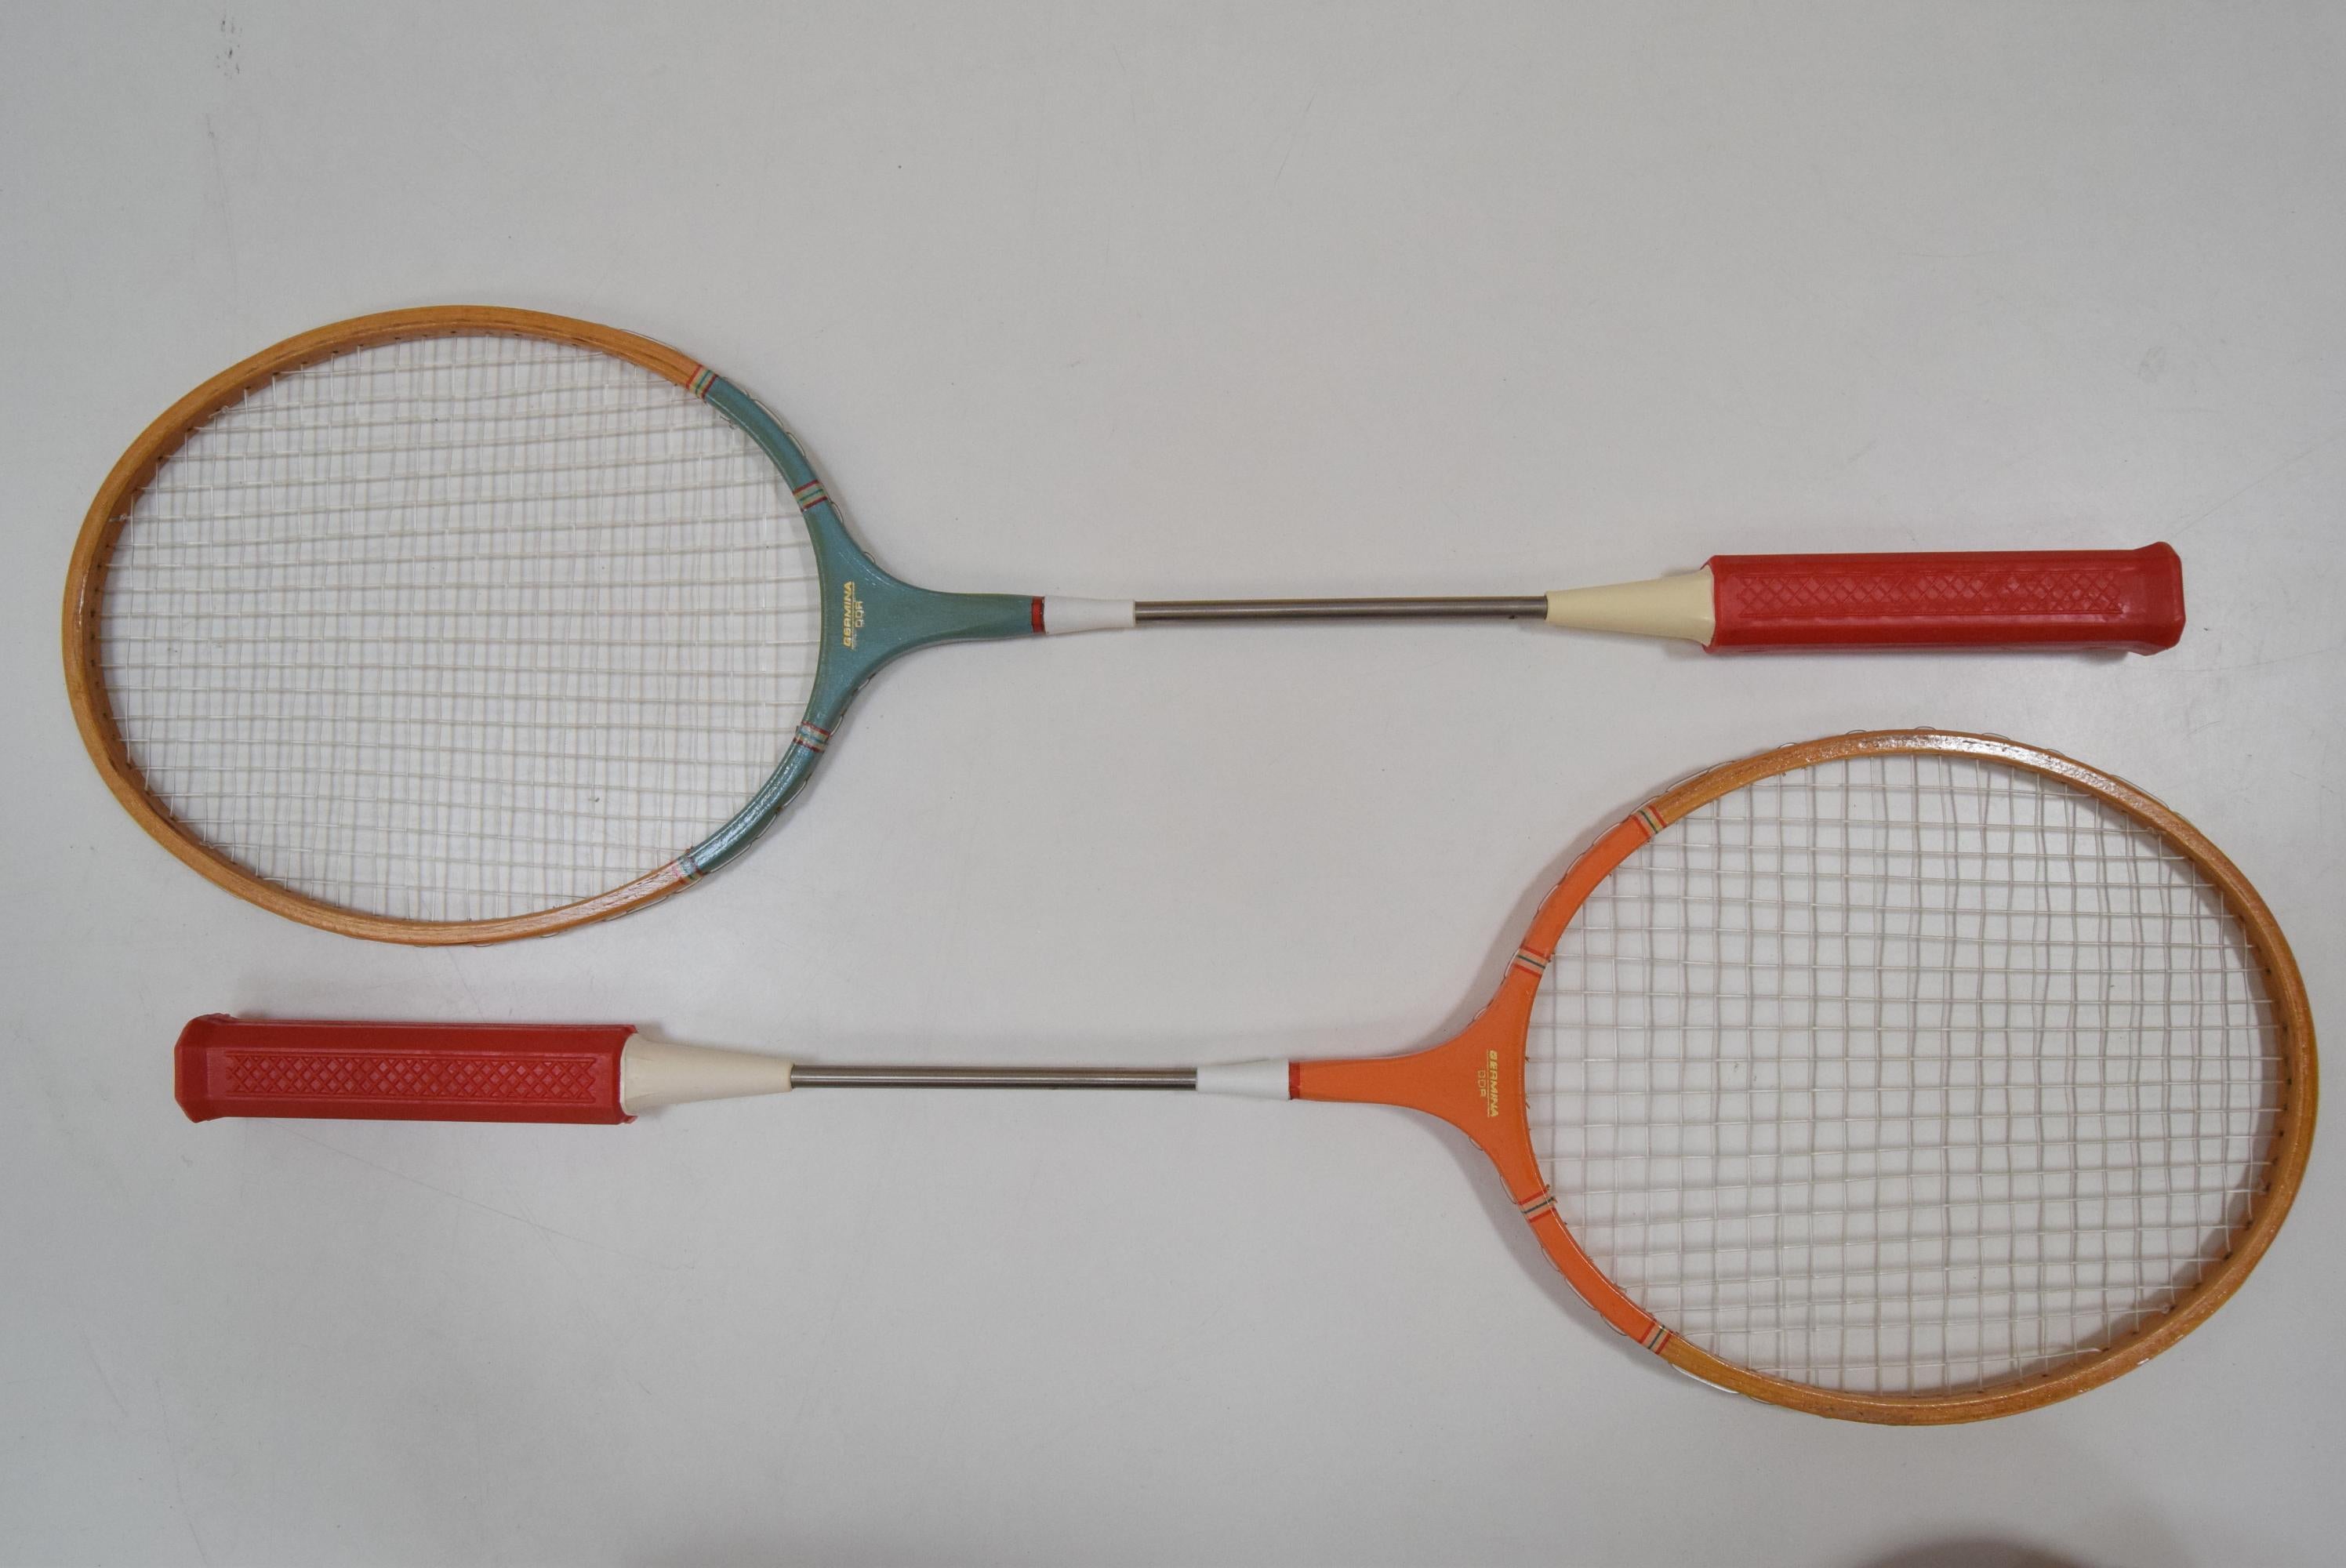 gucci badminton racket